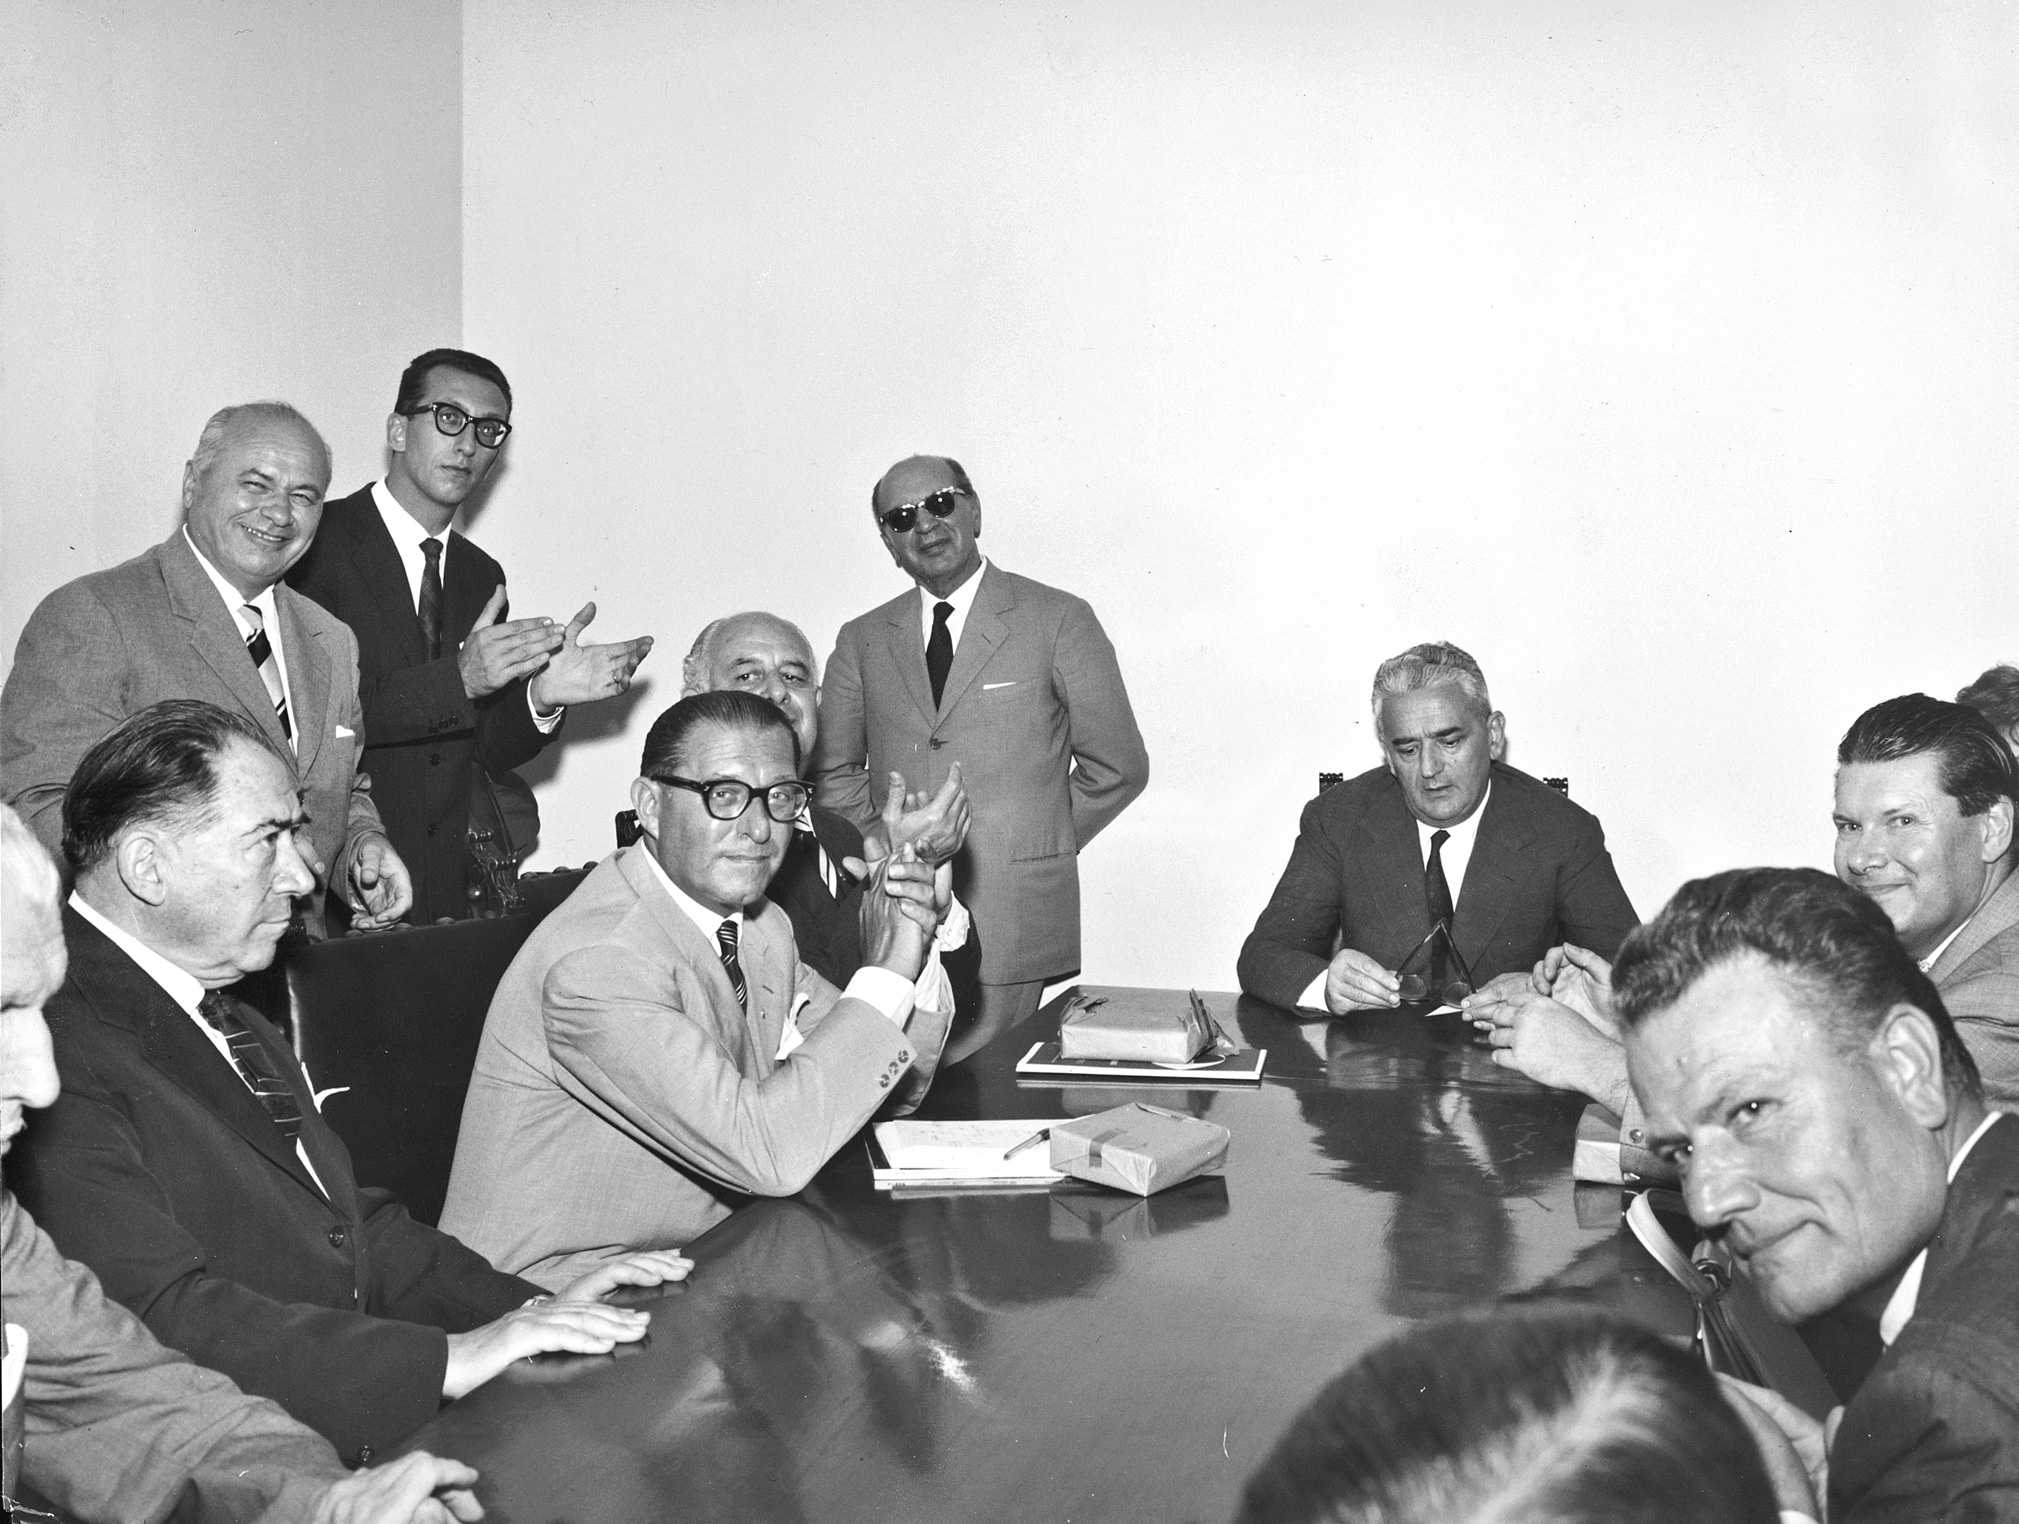 1961. Conferenza stampa del I Salone del Mobile di Milano. A destra, in primo piano, Angelo Molteni